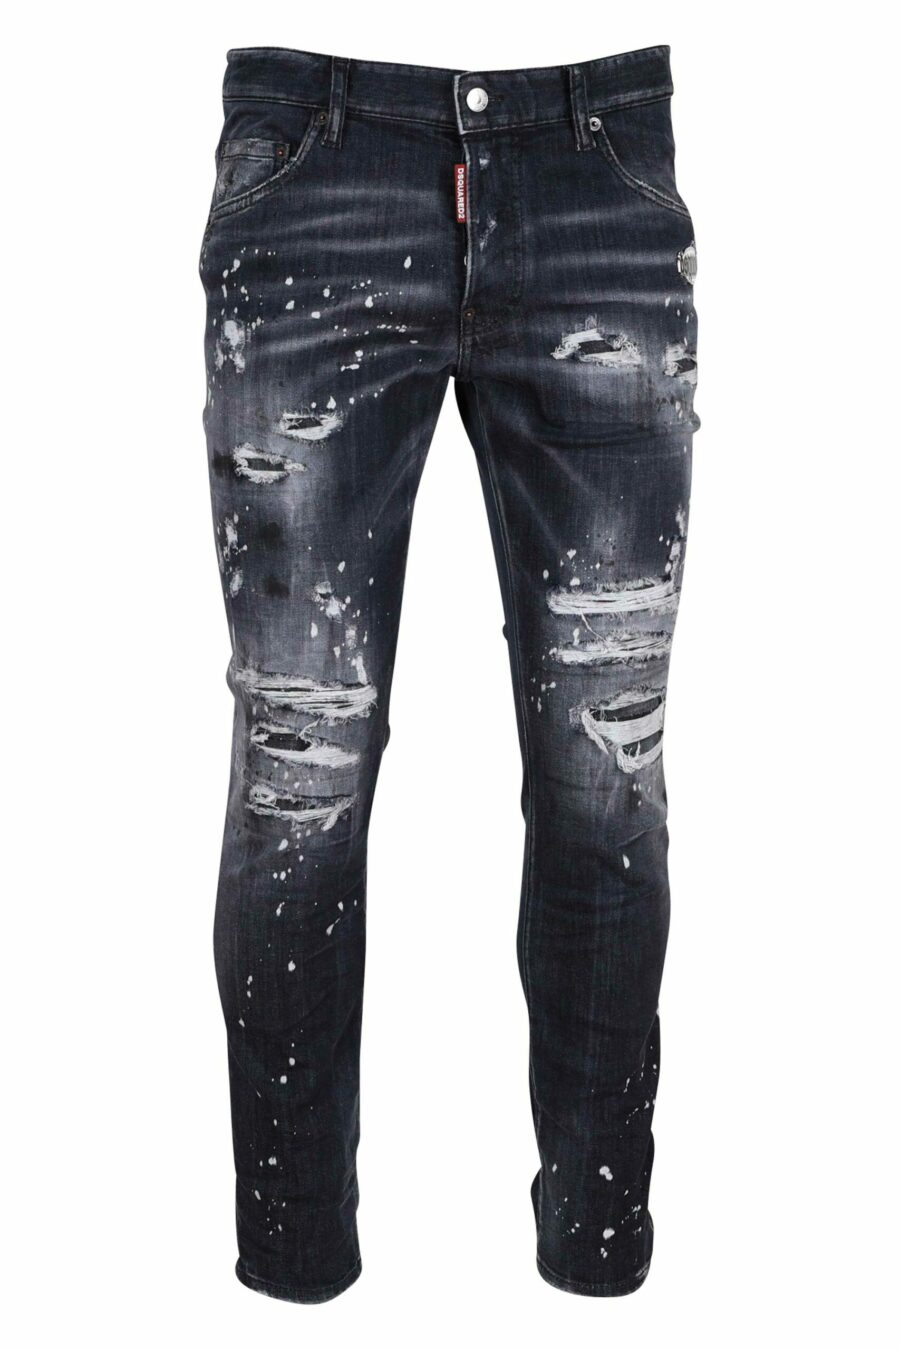 Schwarze "Skater-Jeans" mit Rissen - 8054148284084 skaliert